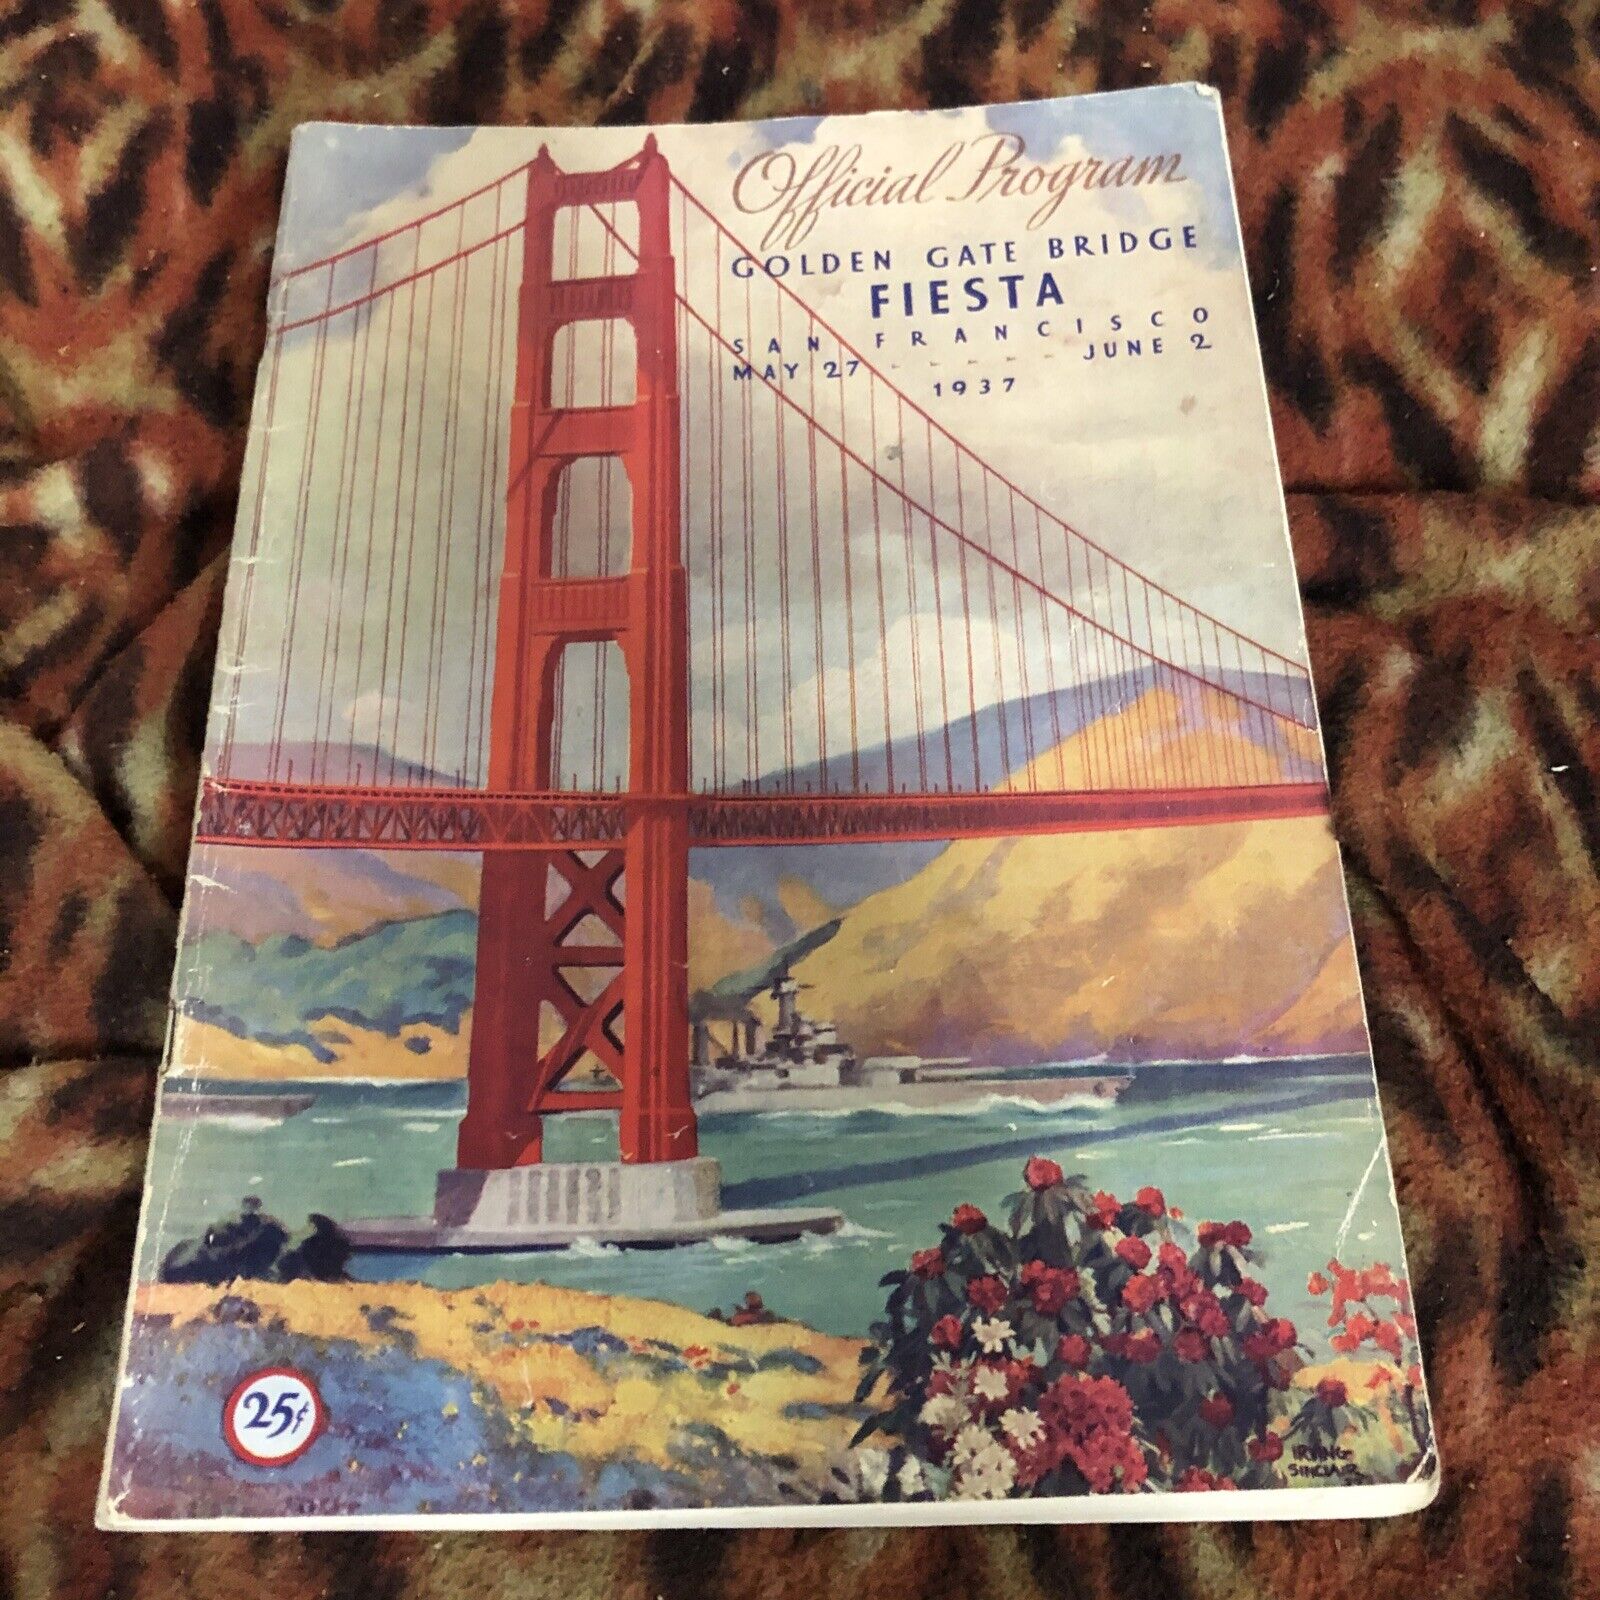 Official Souvenir Program Golden Gate Bridge Fiesta May 27 June 2 1937